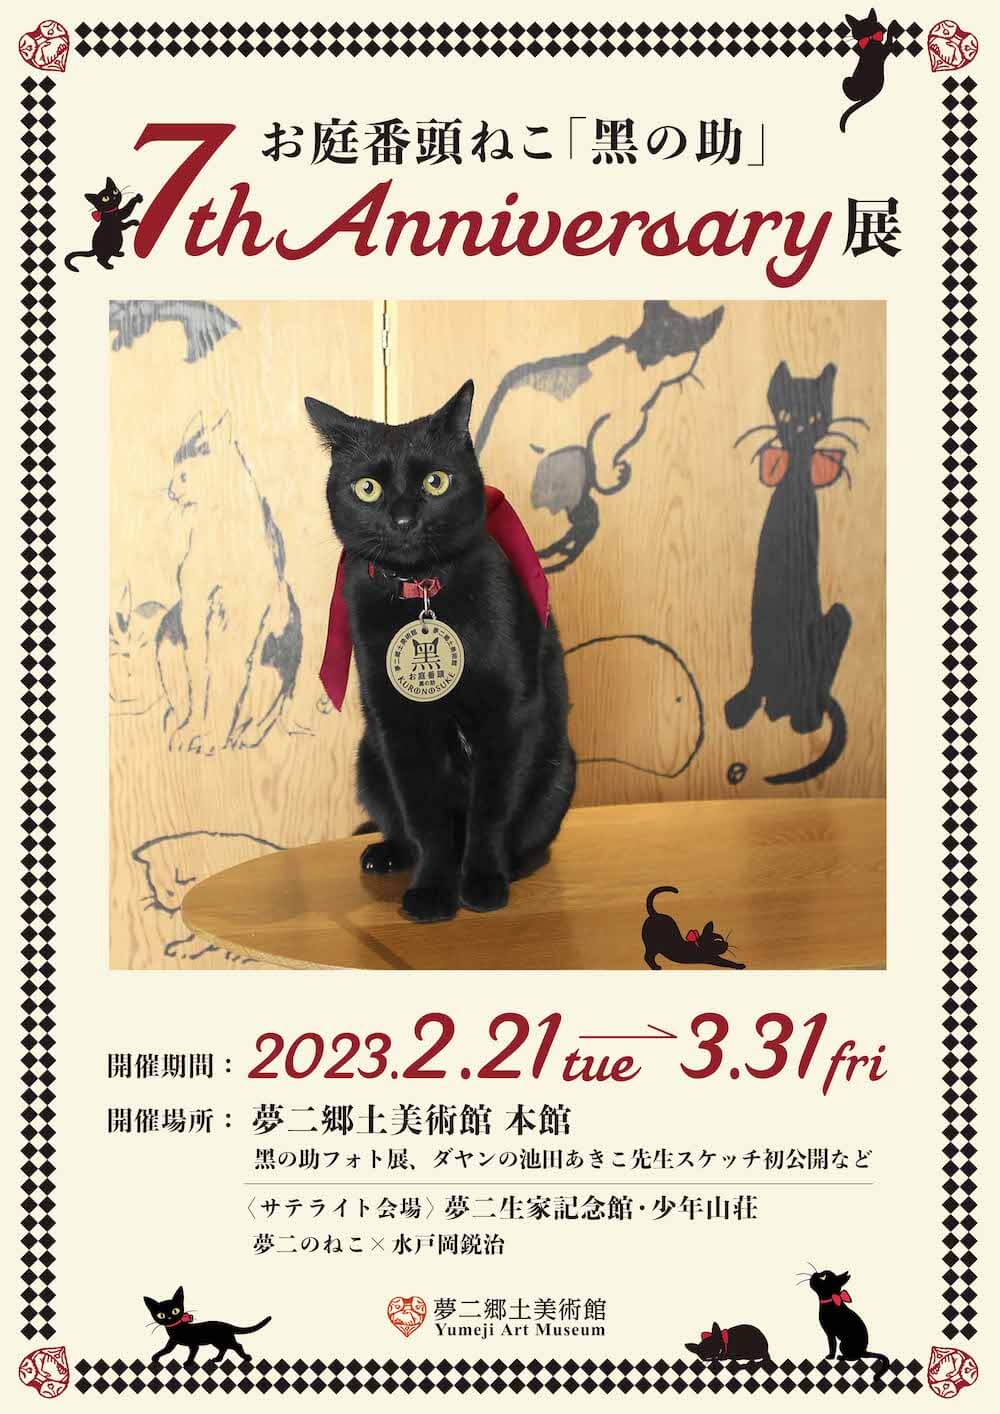 夢二郷土美術館の黒猫ミニ写真展、メインビジュアル